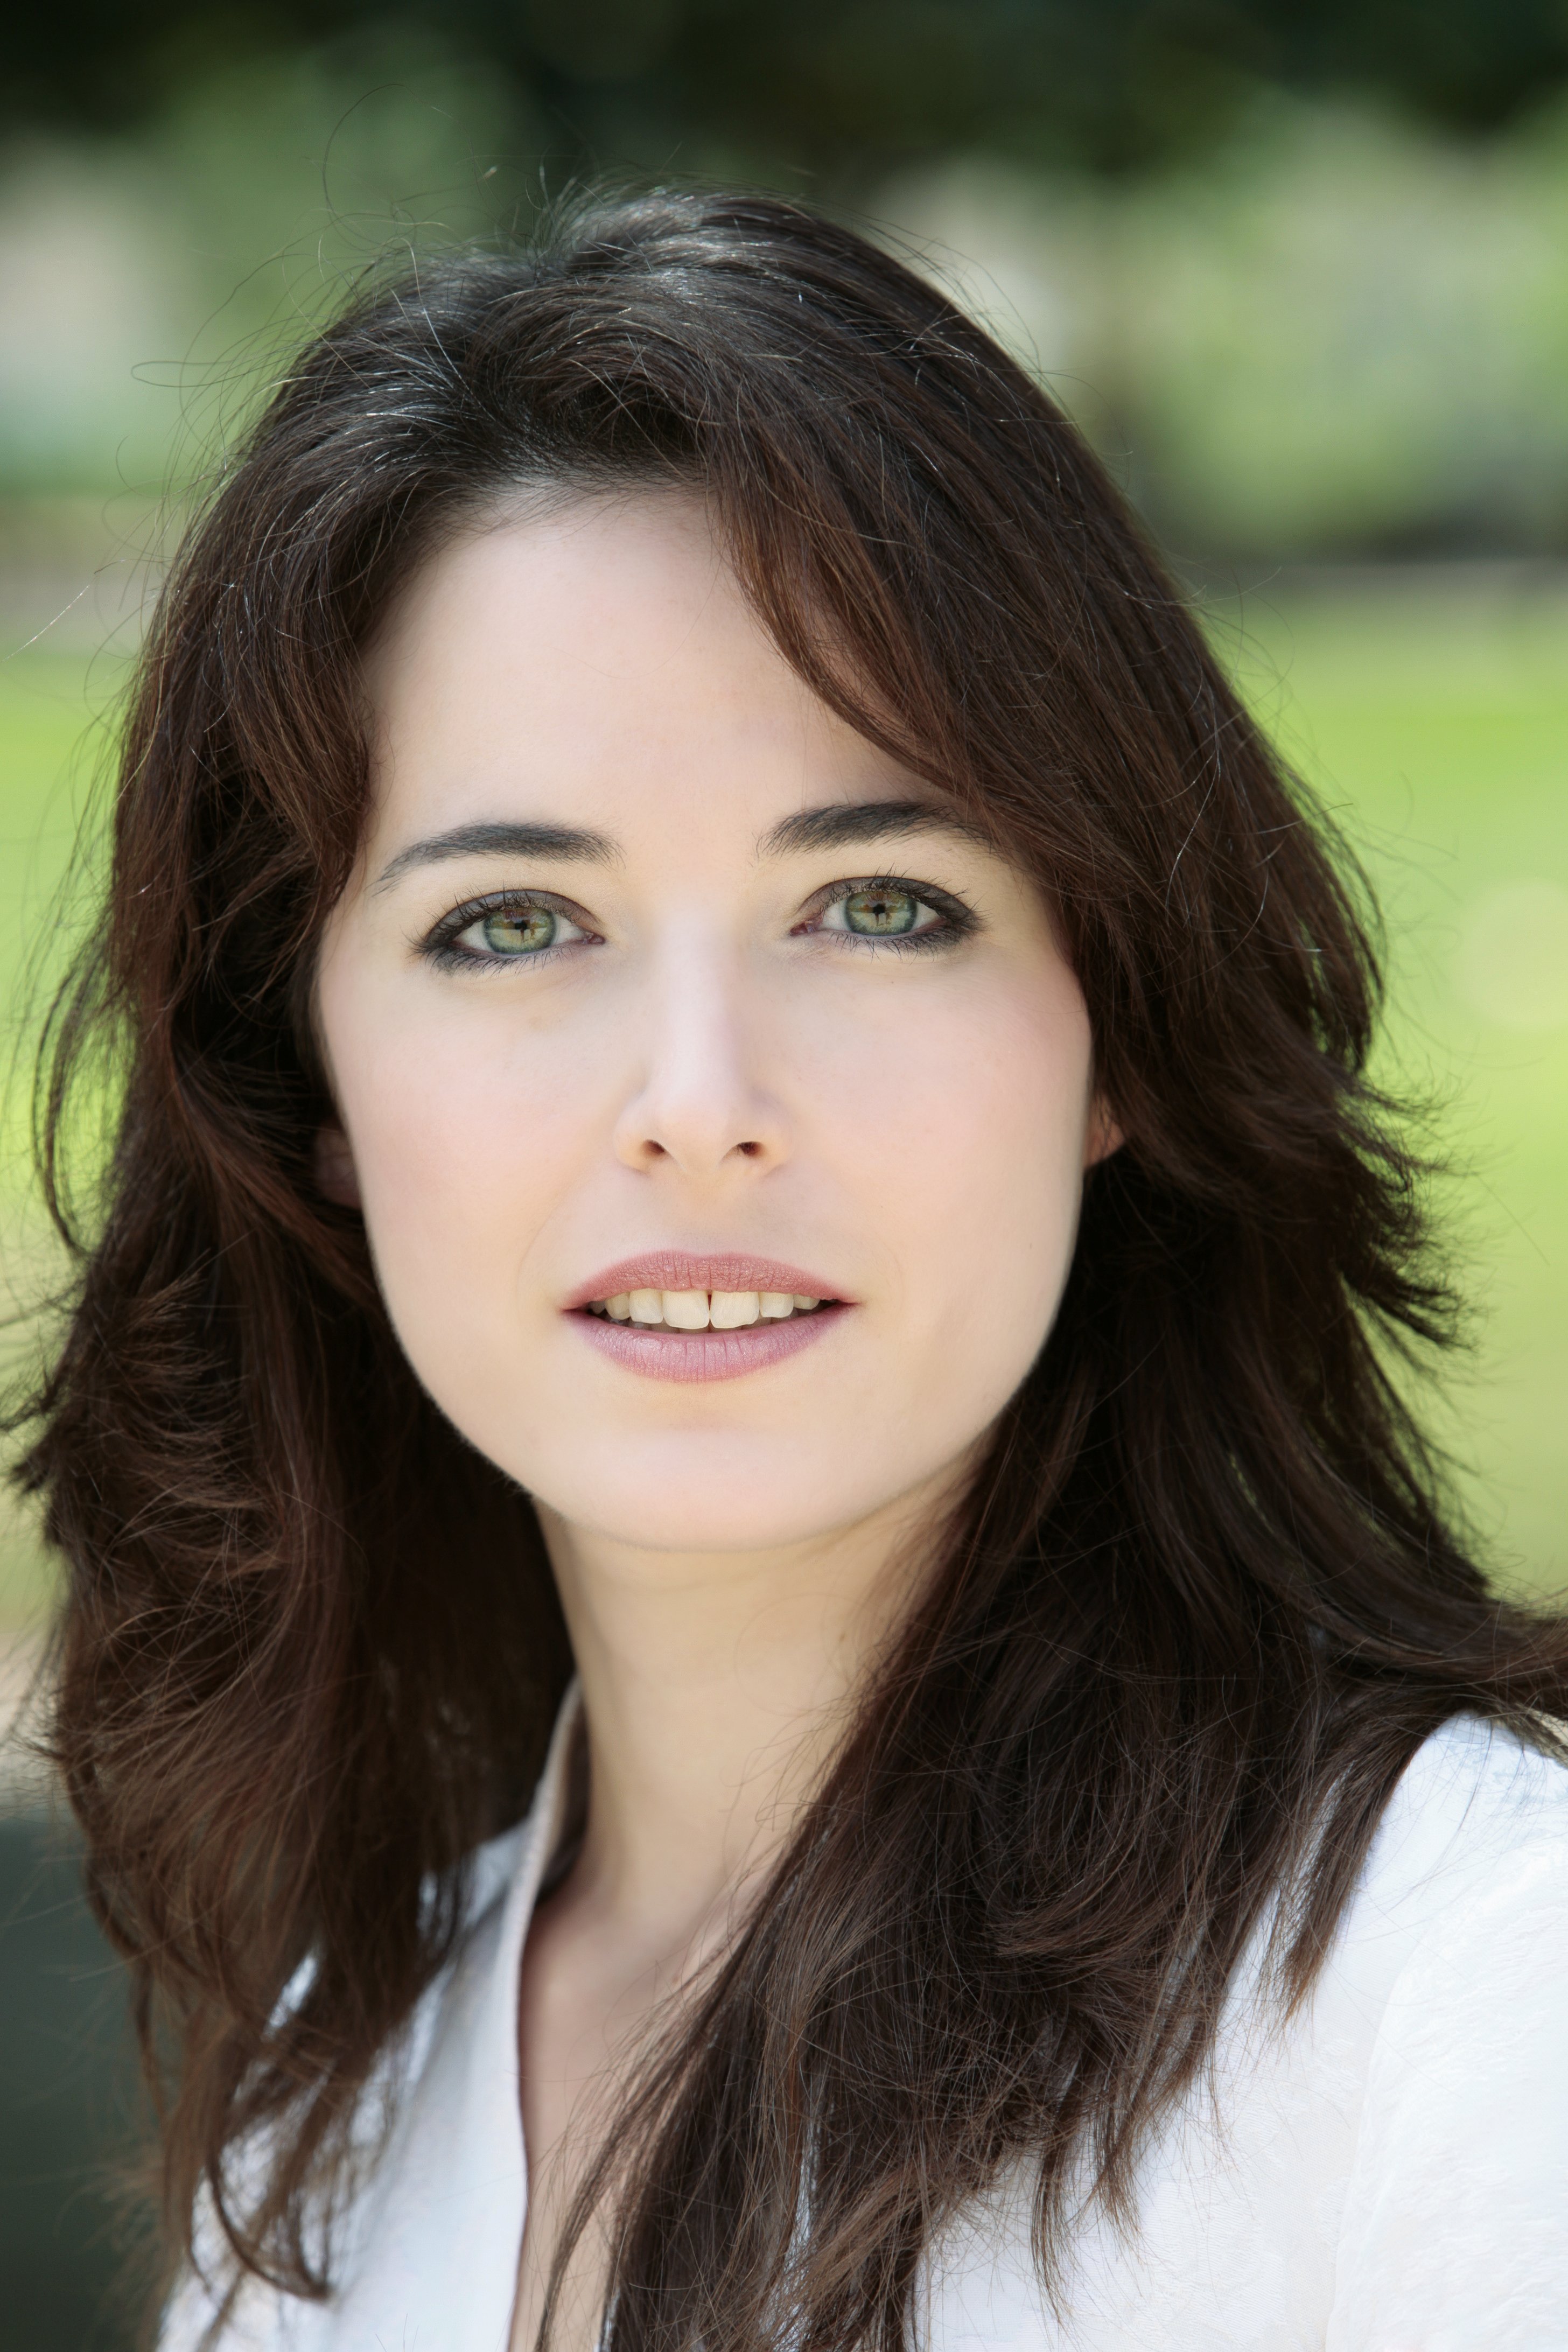 Portrait d'une jeune femme avec des yeux verts | photo : Shutterstock